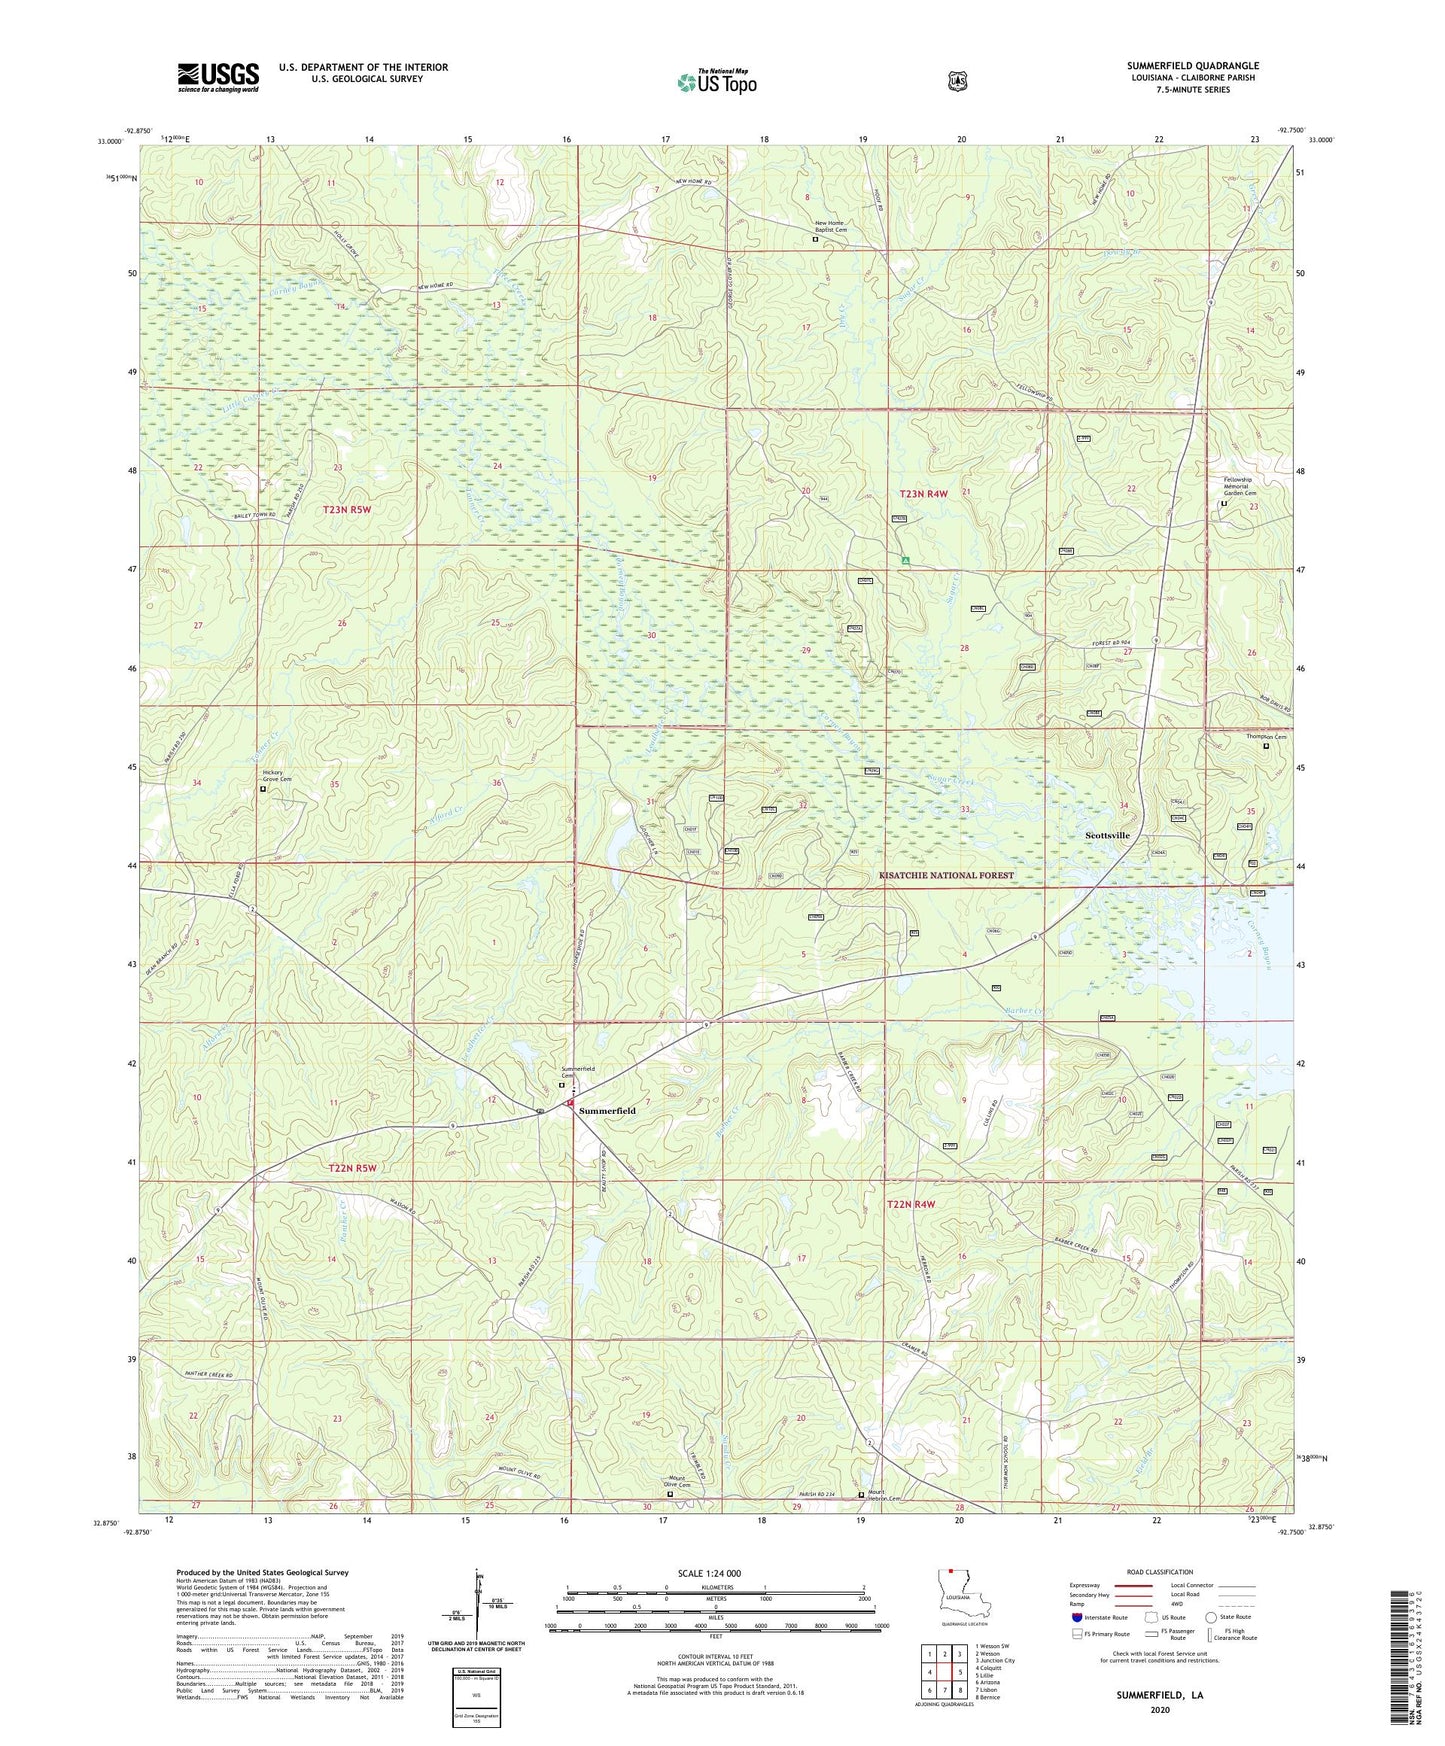 Summerfield Louisiana US Topo Map Image